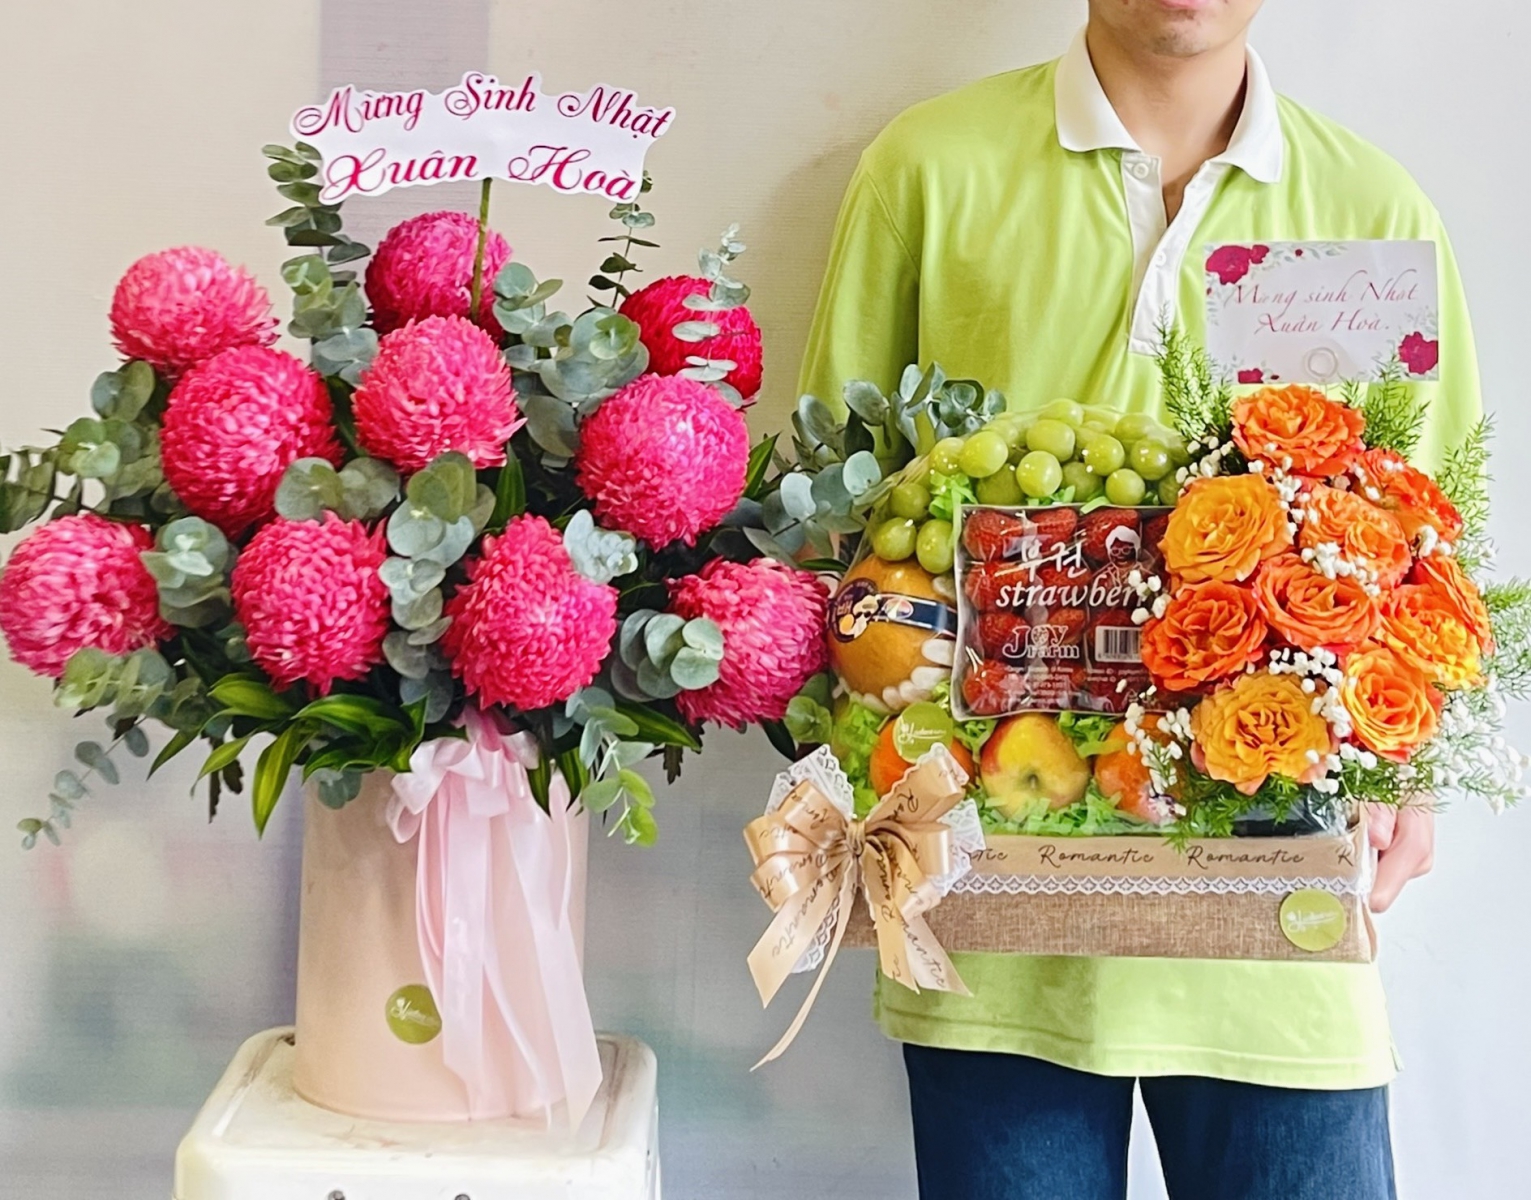 Shop hoa tươi Bình Sơn, Long Thành, Đồng Nai uy tín, chất lượng